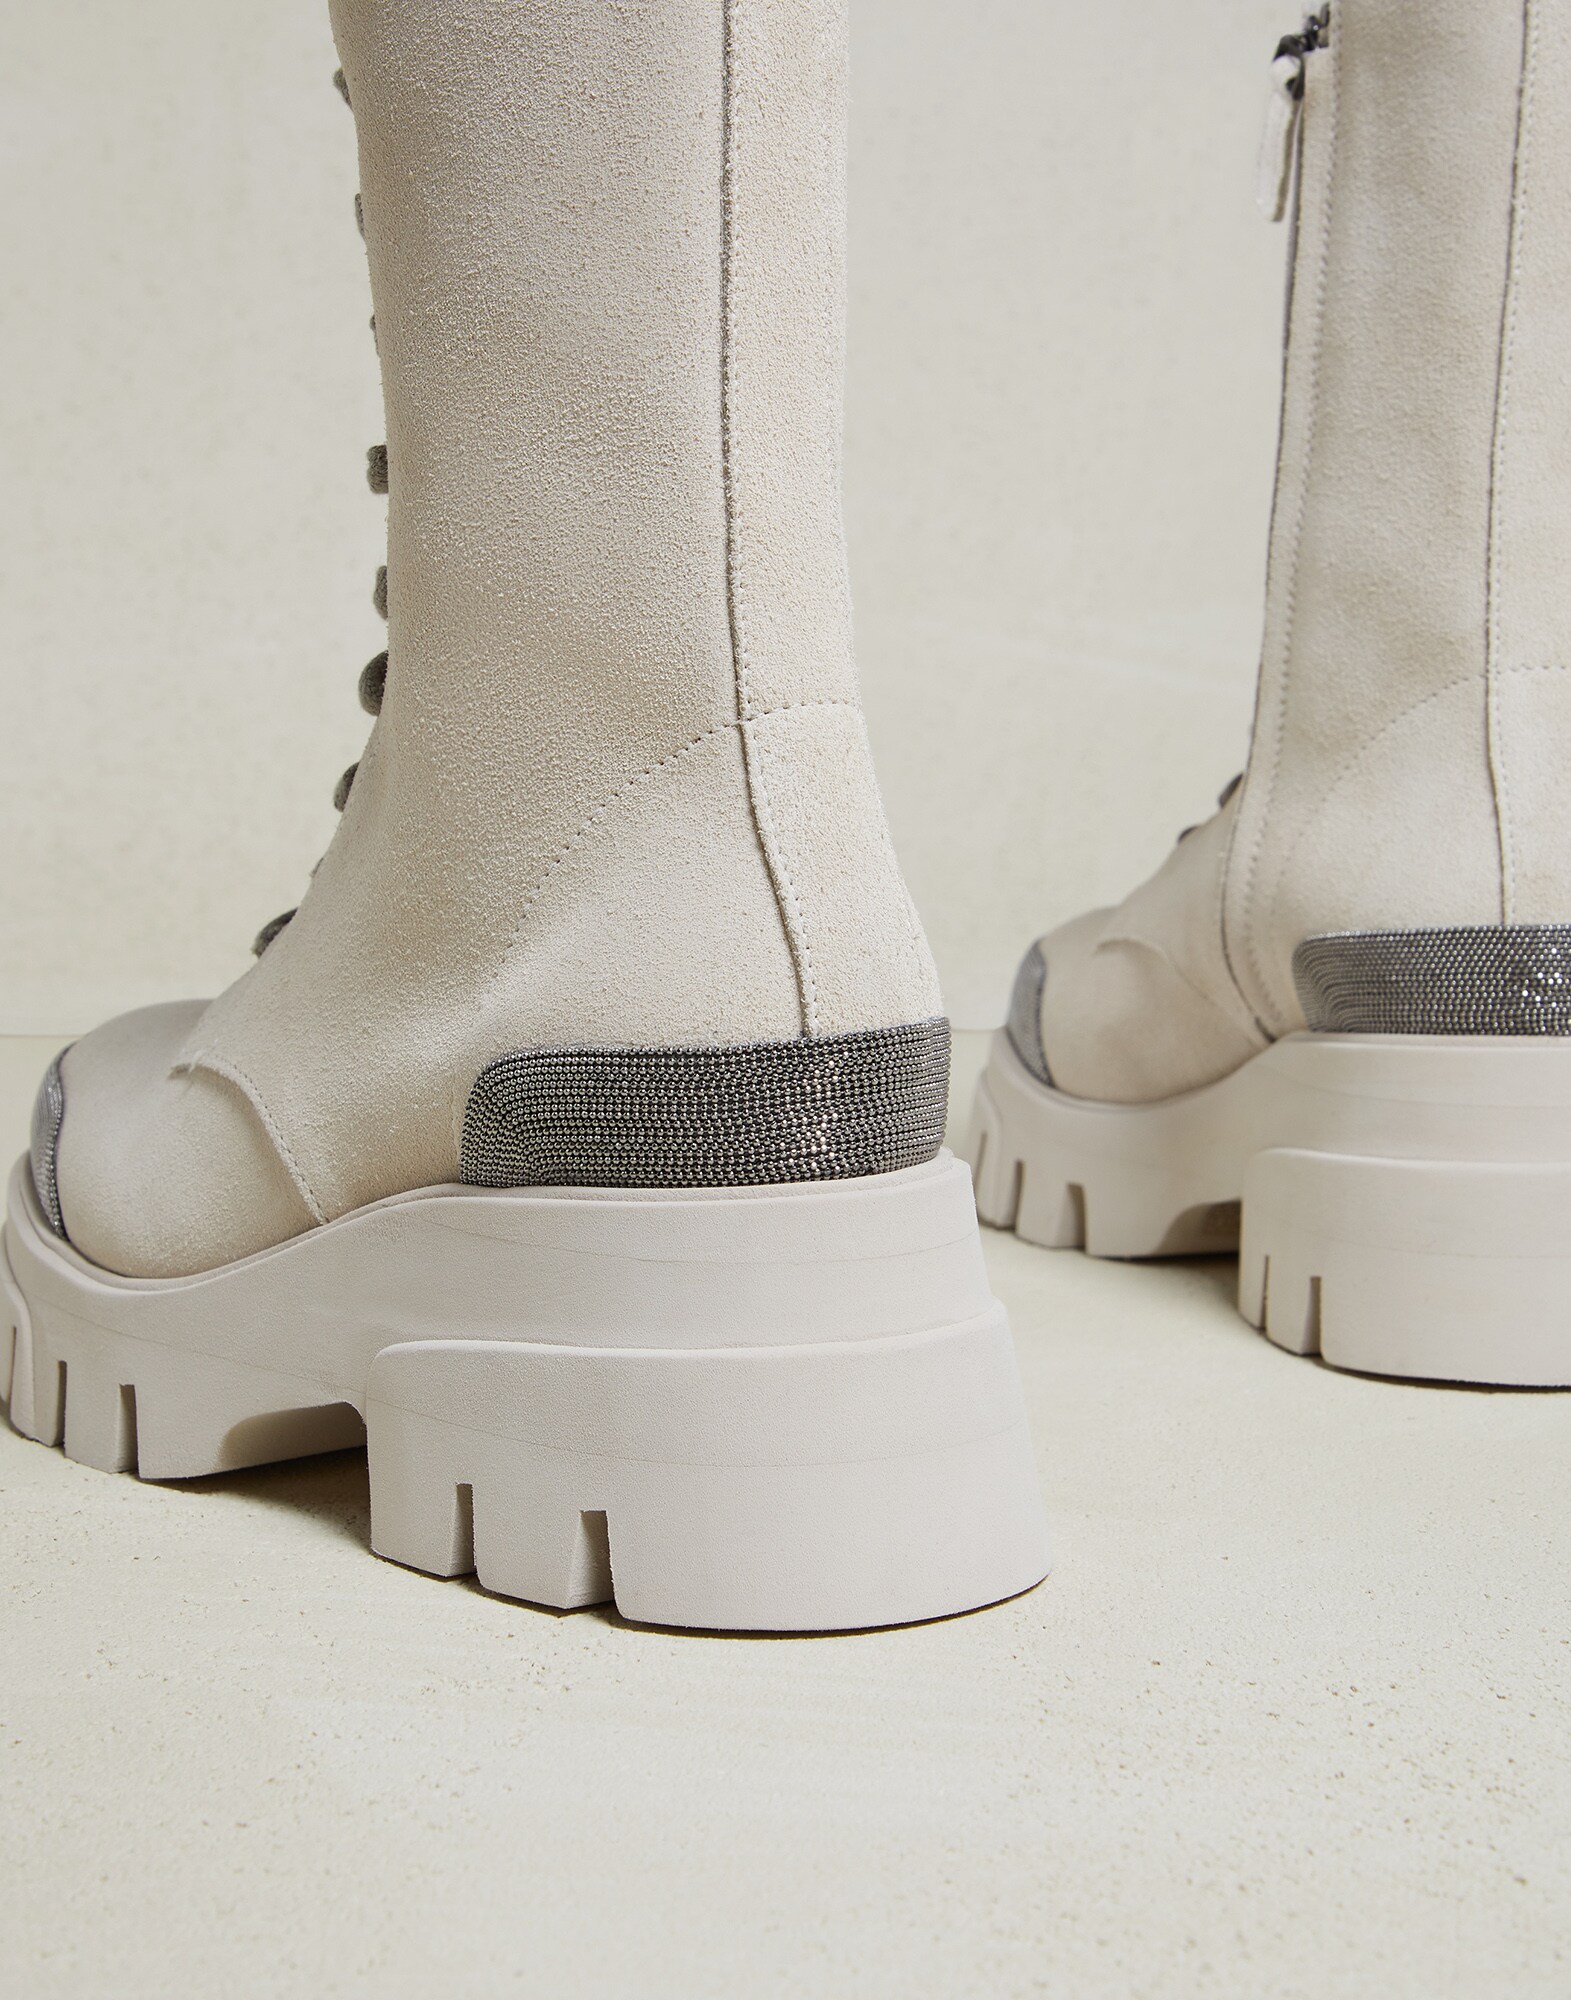 Brunello Cucinelli Wildleder Stiefel aus Veloursleder in Natur Damen Schuhe Stiefel Stiefeletten 